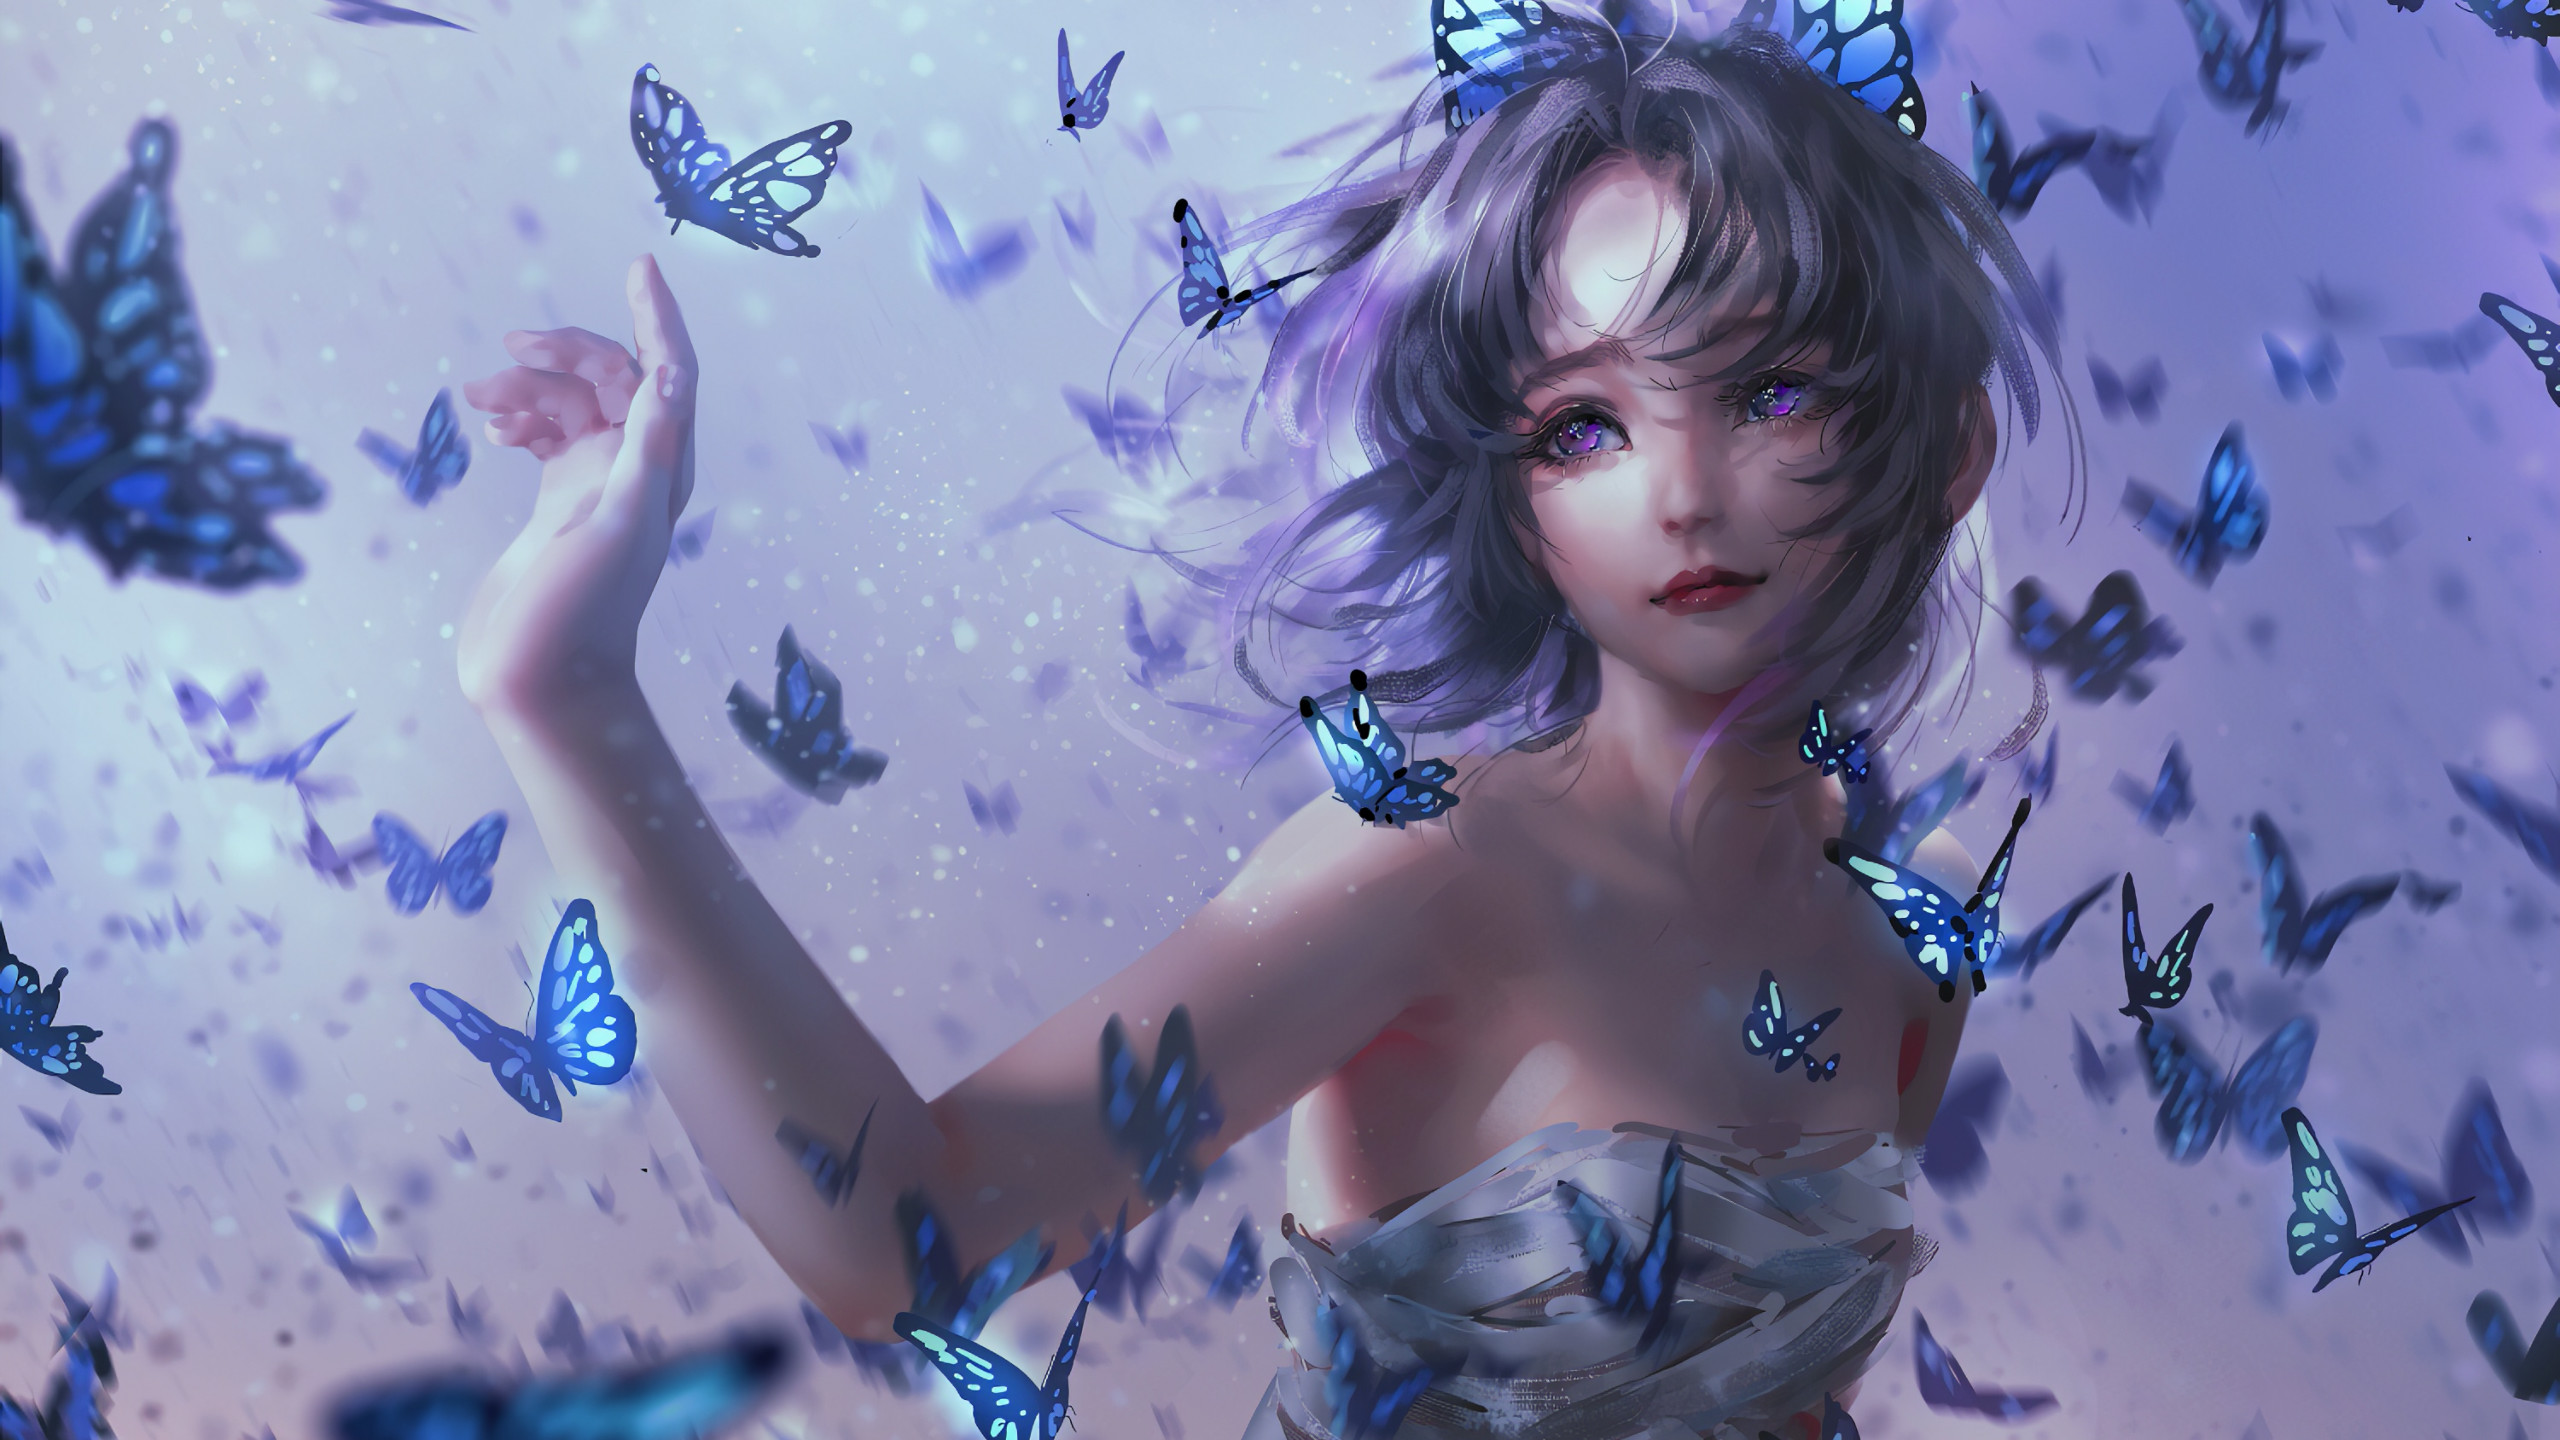 满天蝴蝶围绕身边飞舞的动漫女生电脑壁纸下载